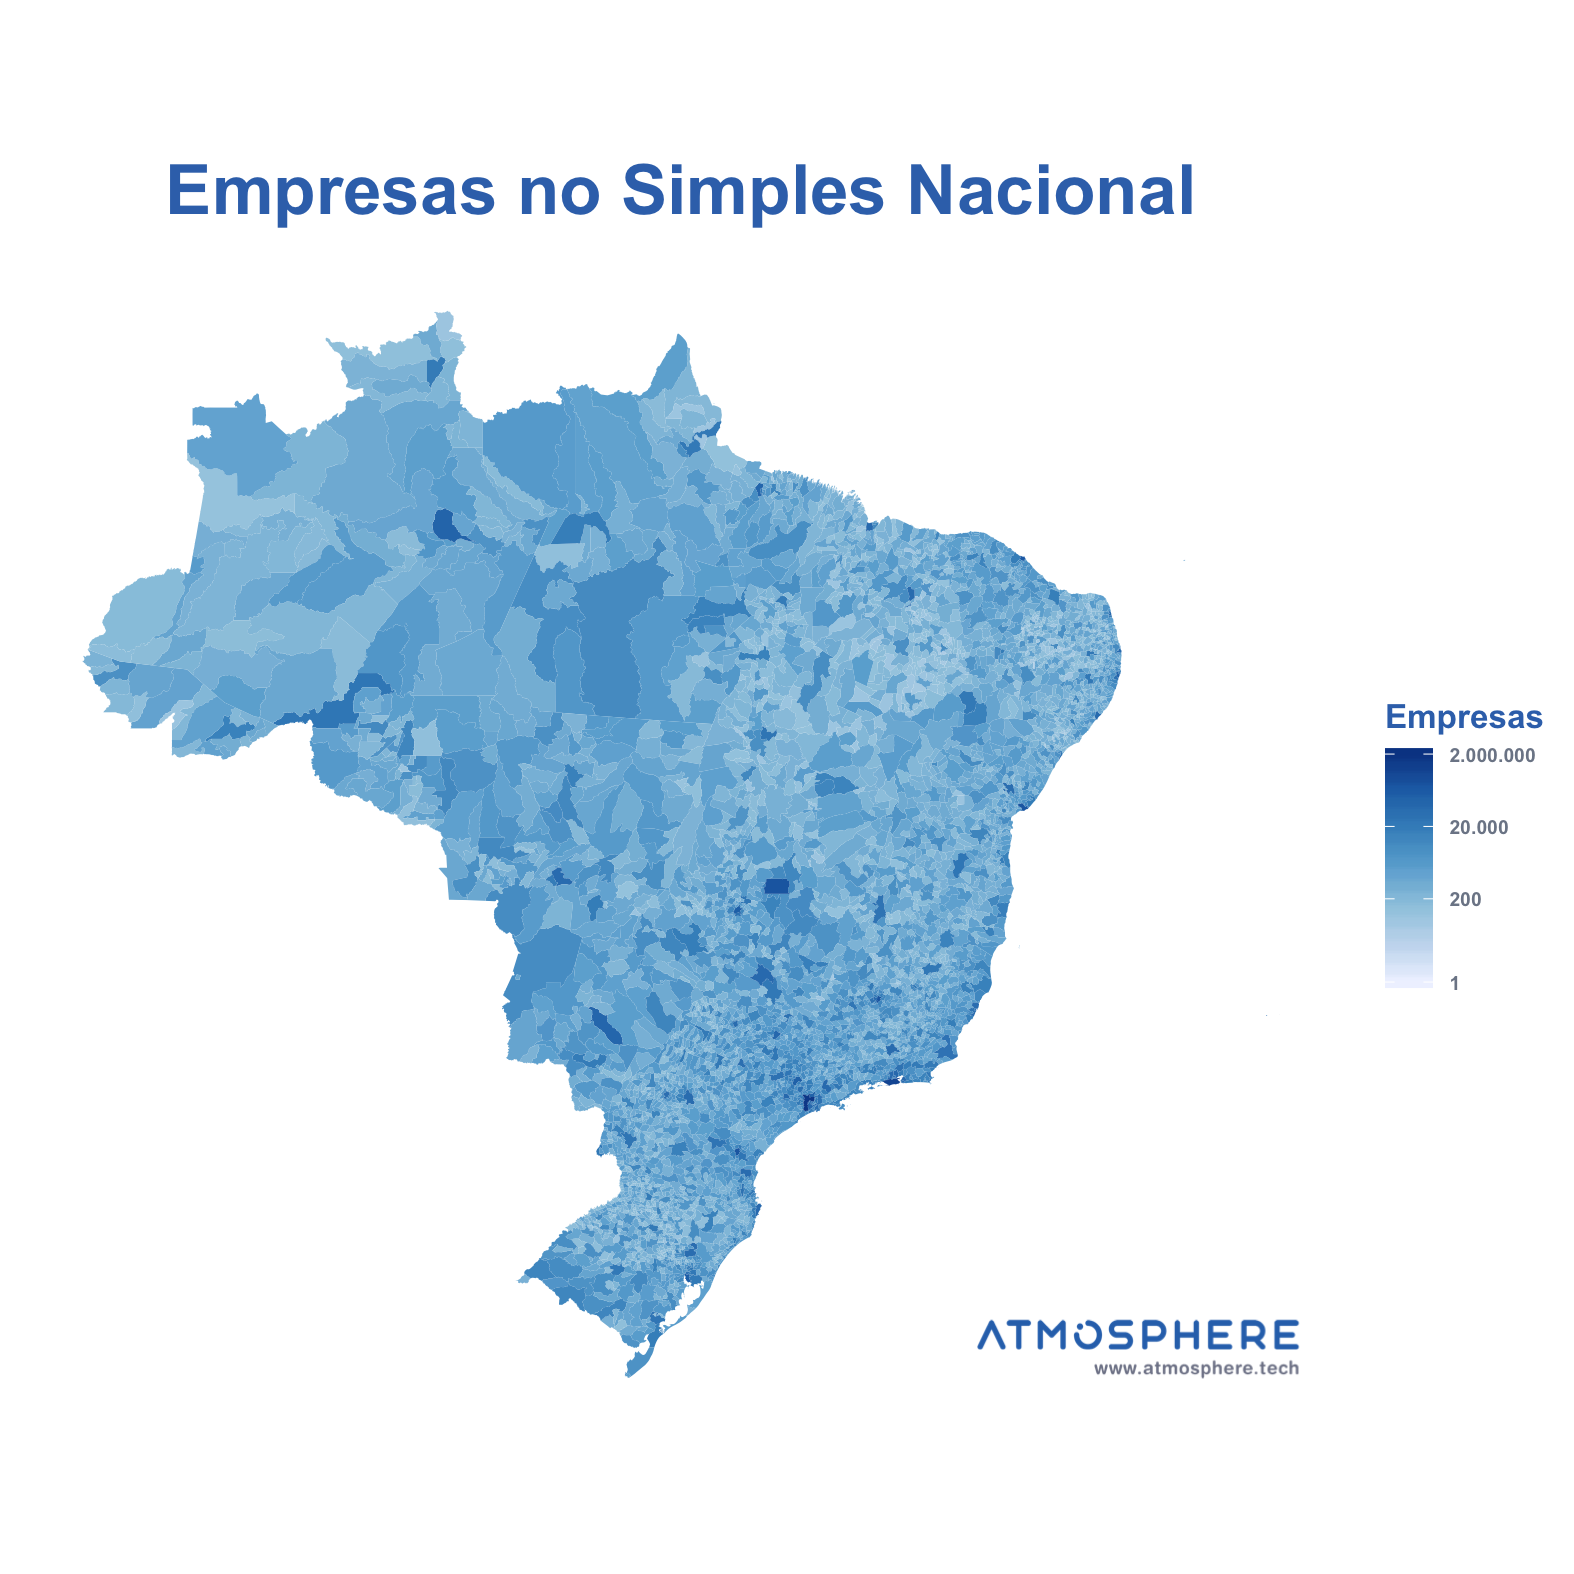 Atmosphere Empresas no Simples Nacional por Município no Brasil